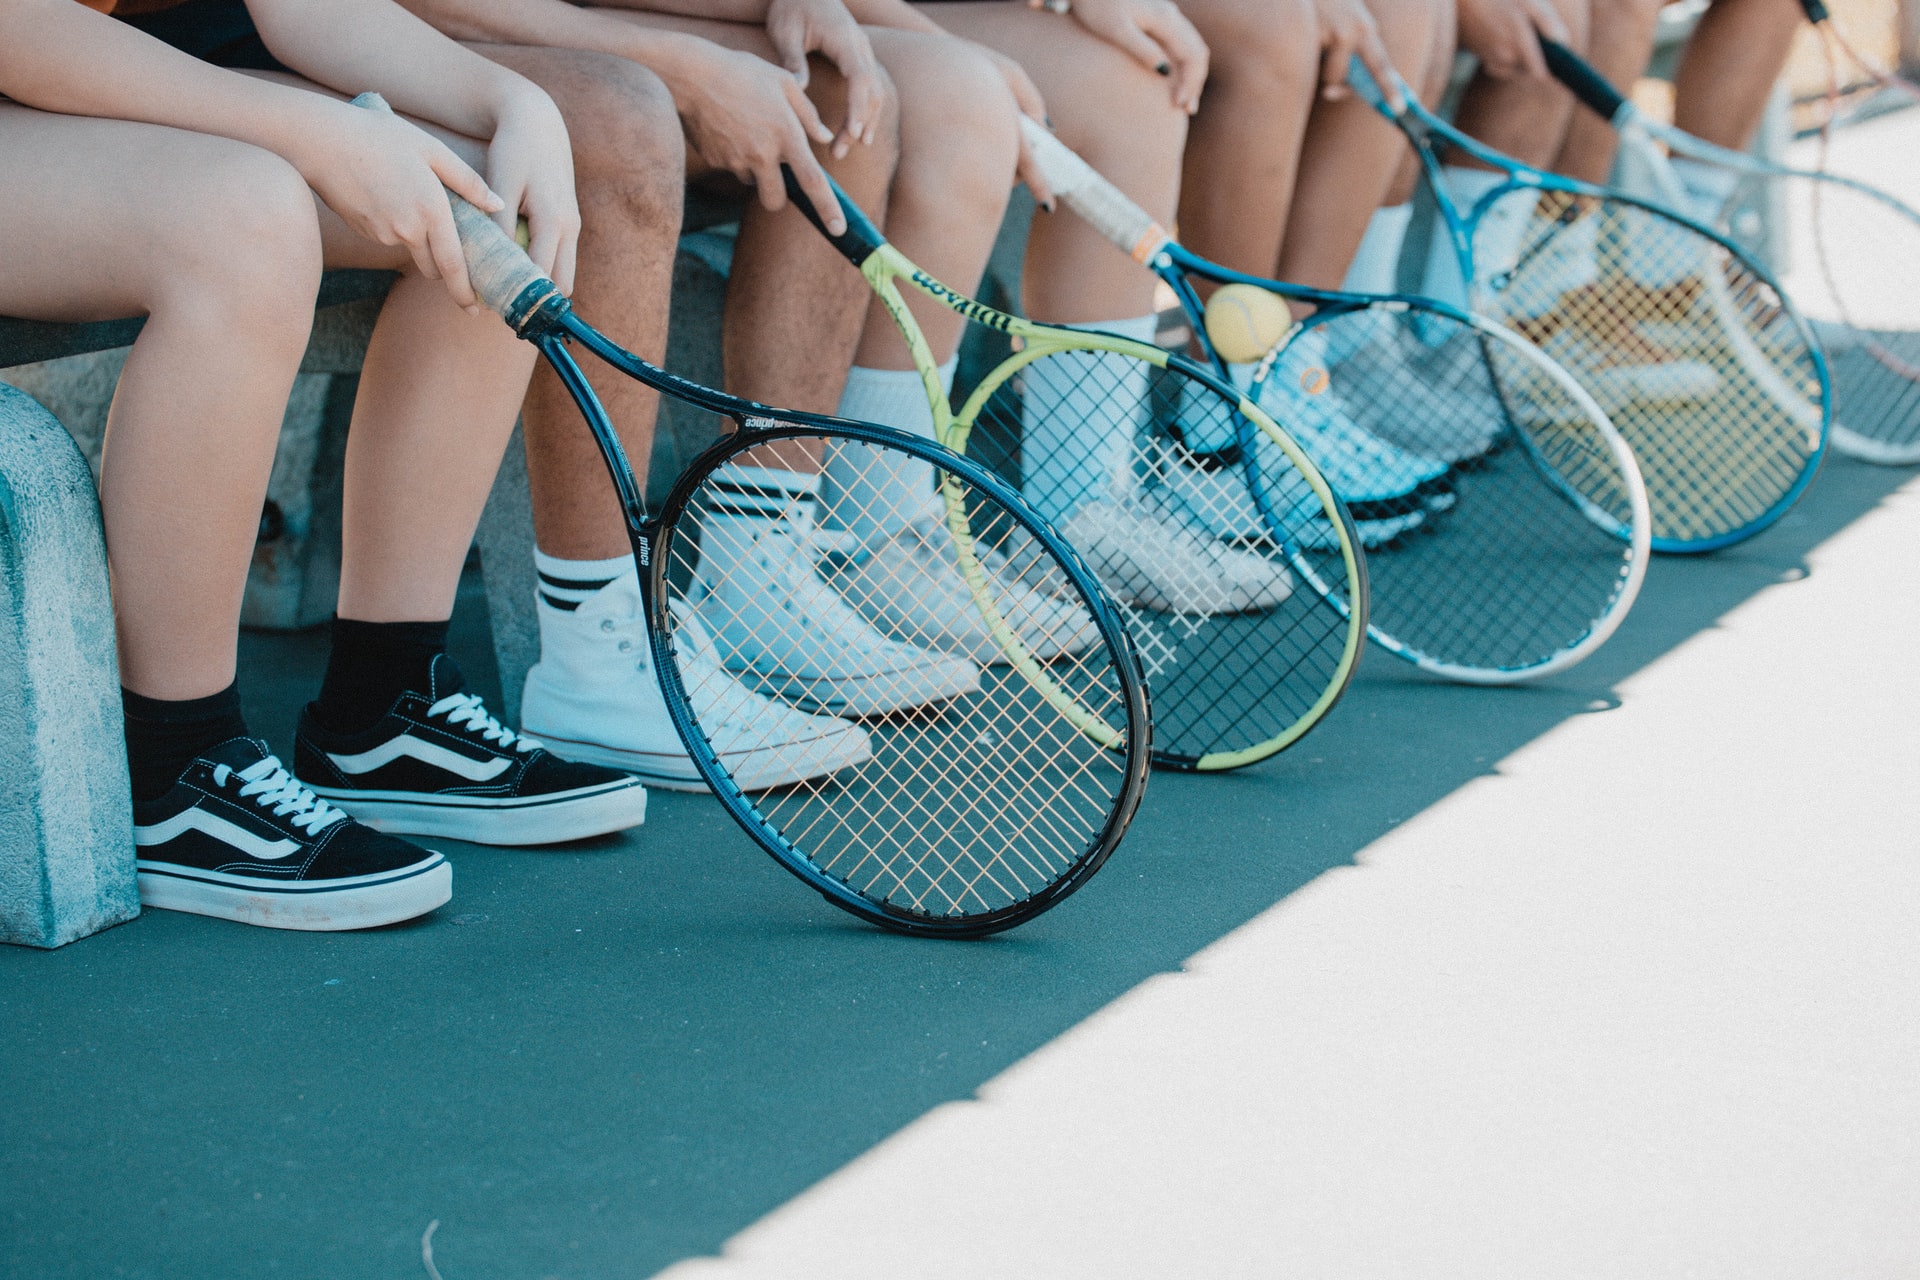 Billige tennissokker slår de tunge mærker på pris og kvalitet